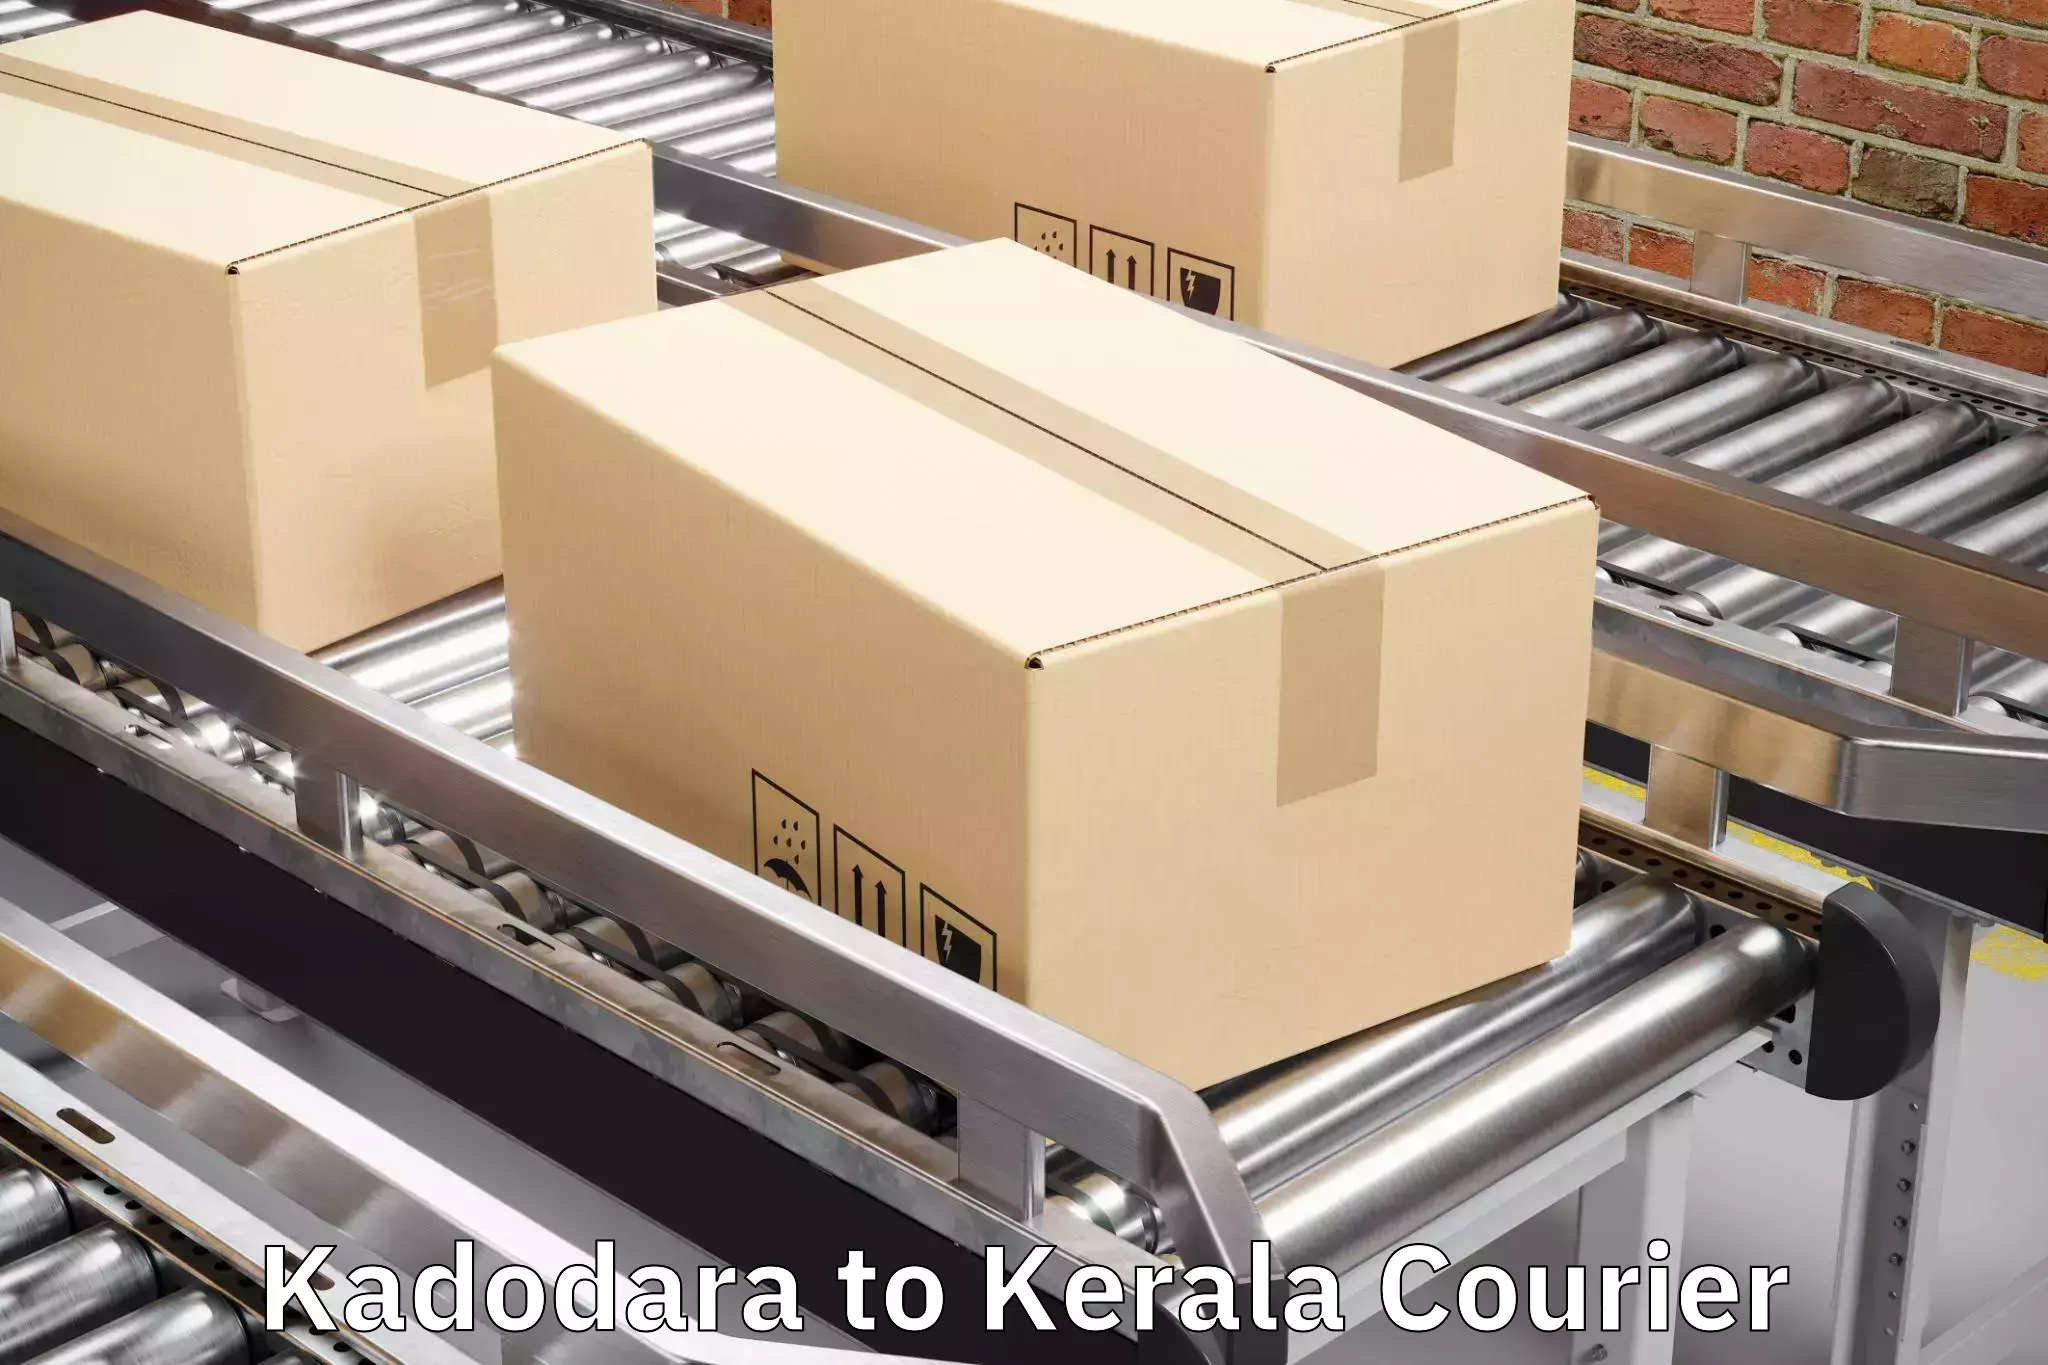 Baggage transport quote Kadodara to Thrissur